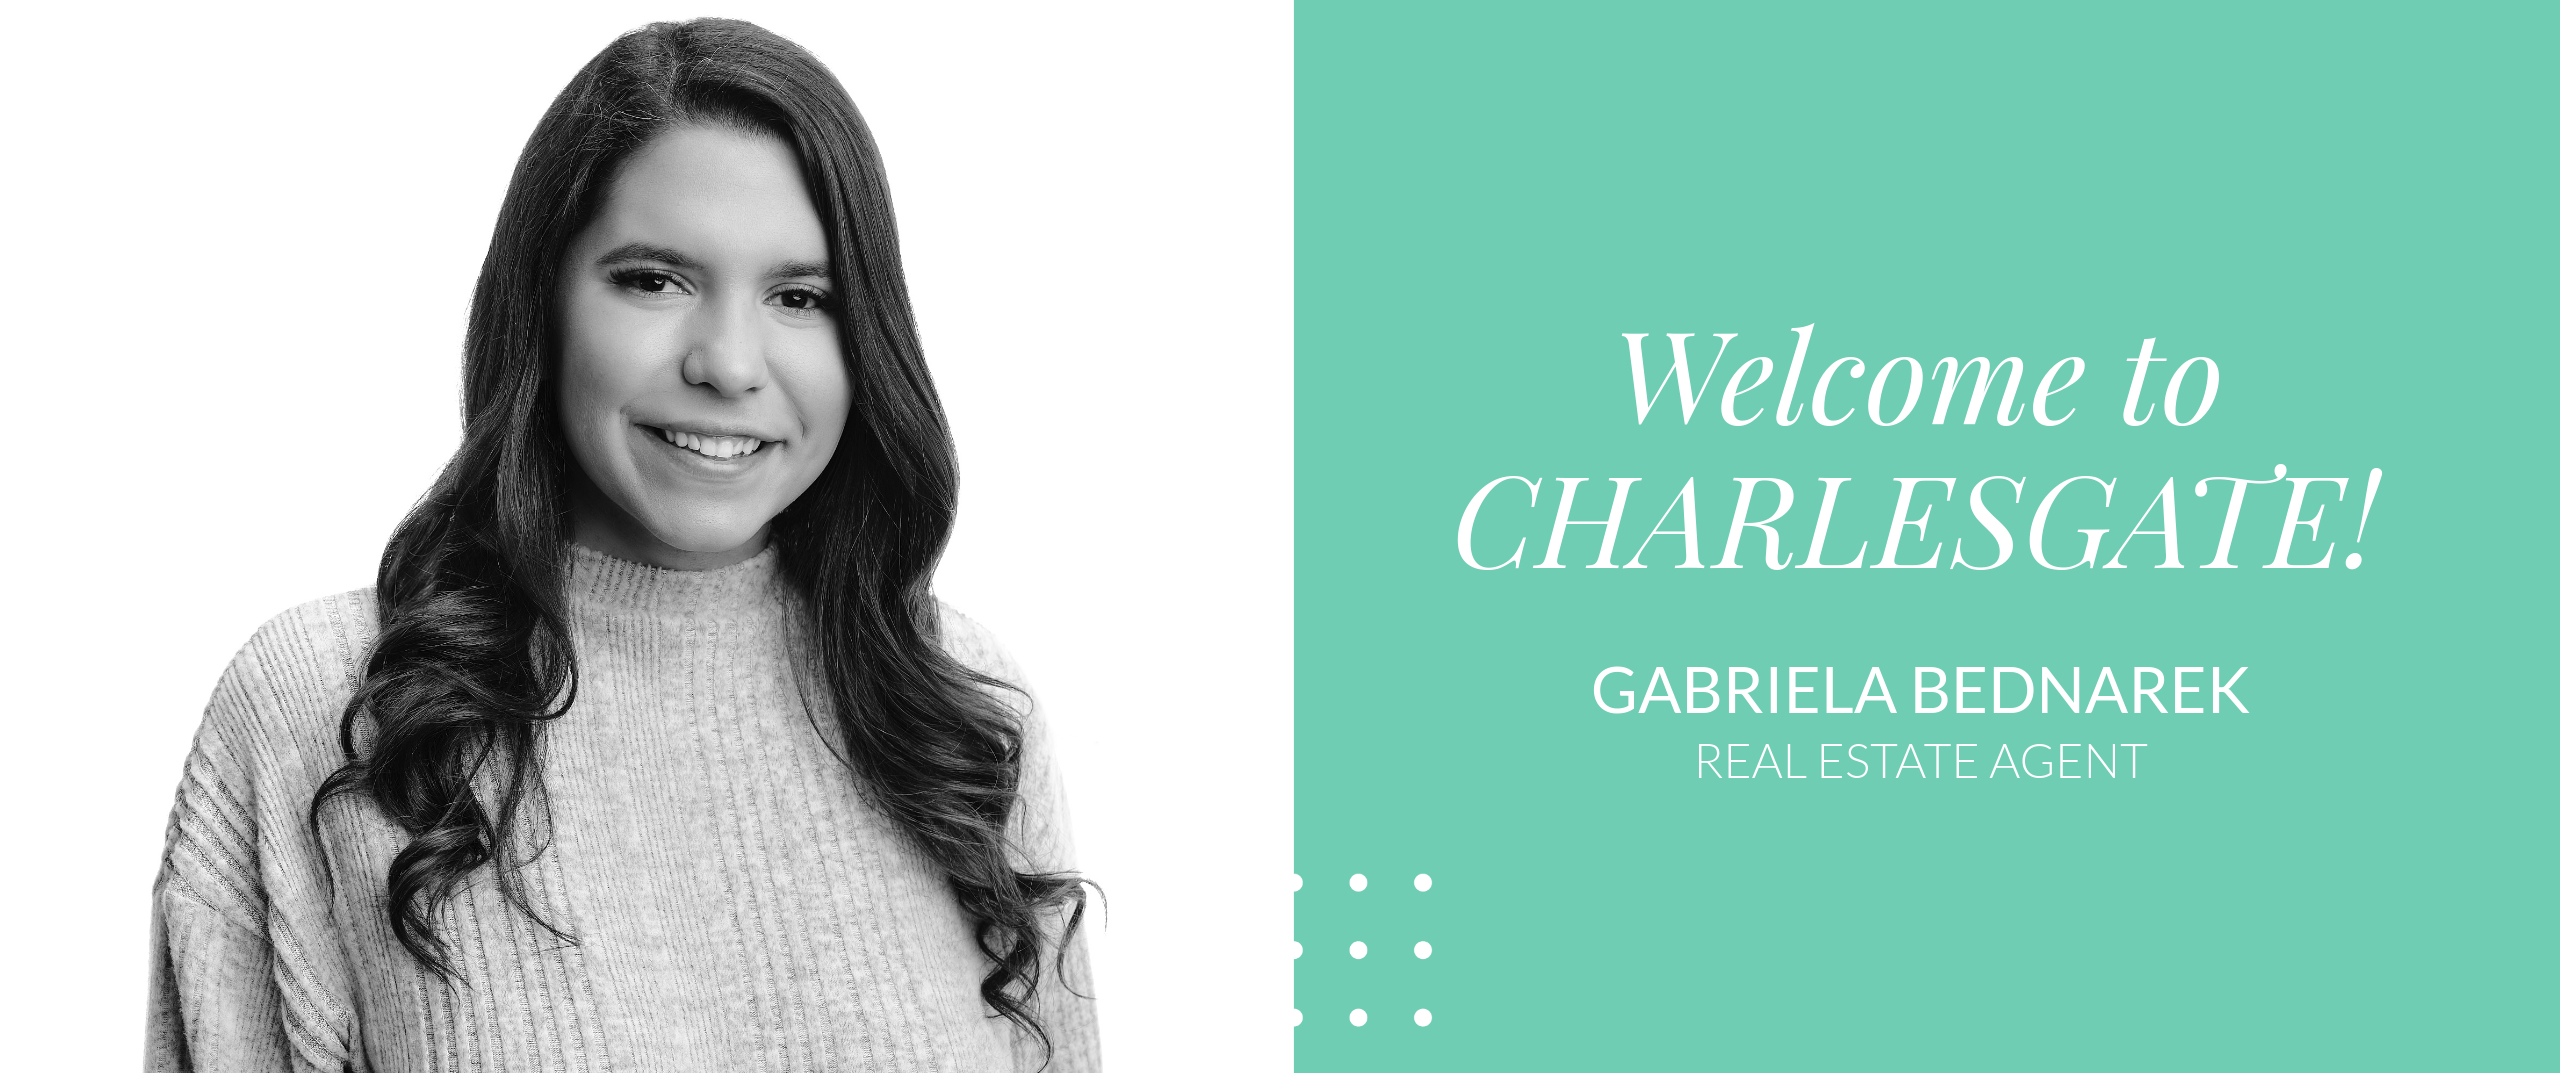 Welcome to CHARLESGATE, Gabriela Bednarek!